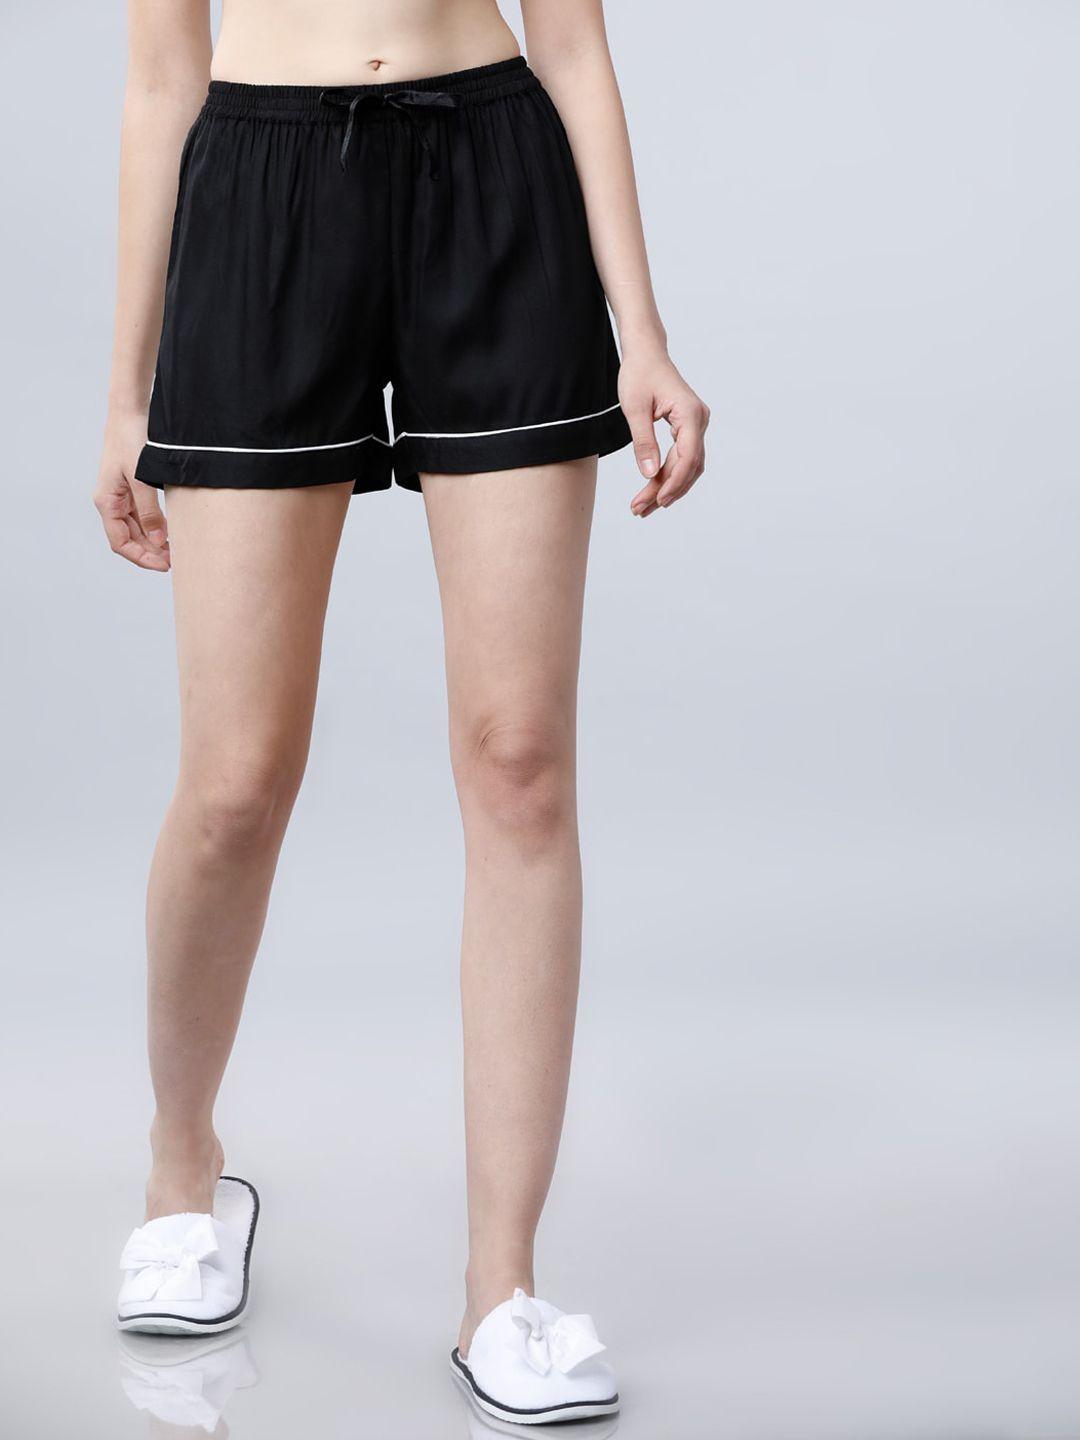 tokyo-talkies-women-black-&-white-printed-lounge-shorts